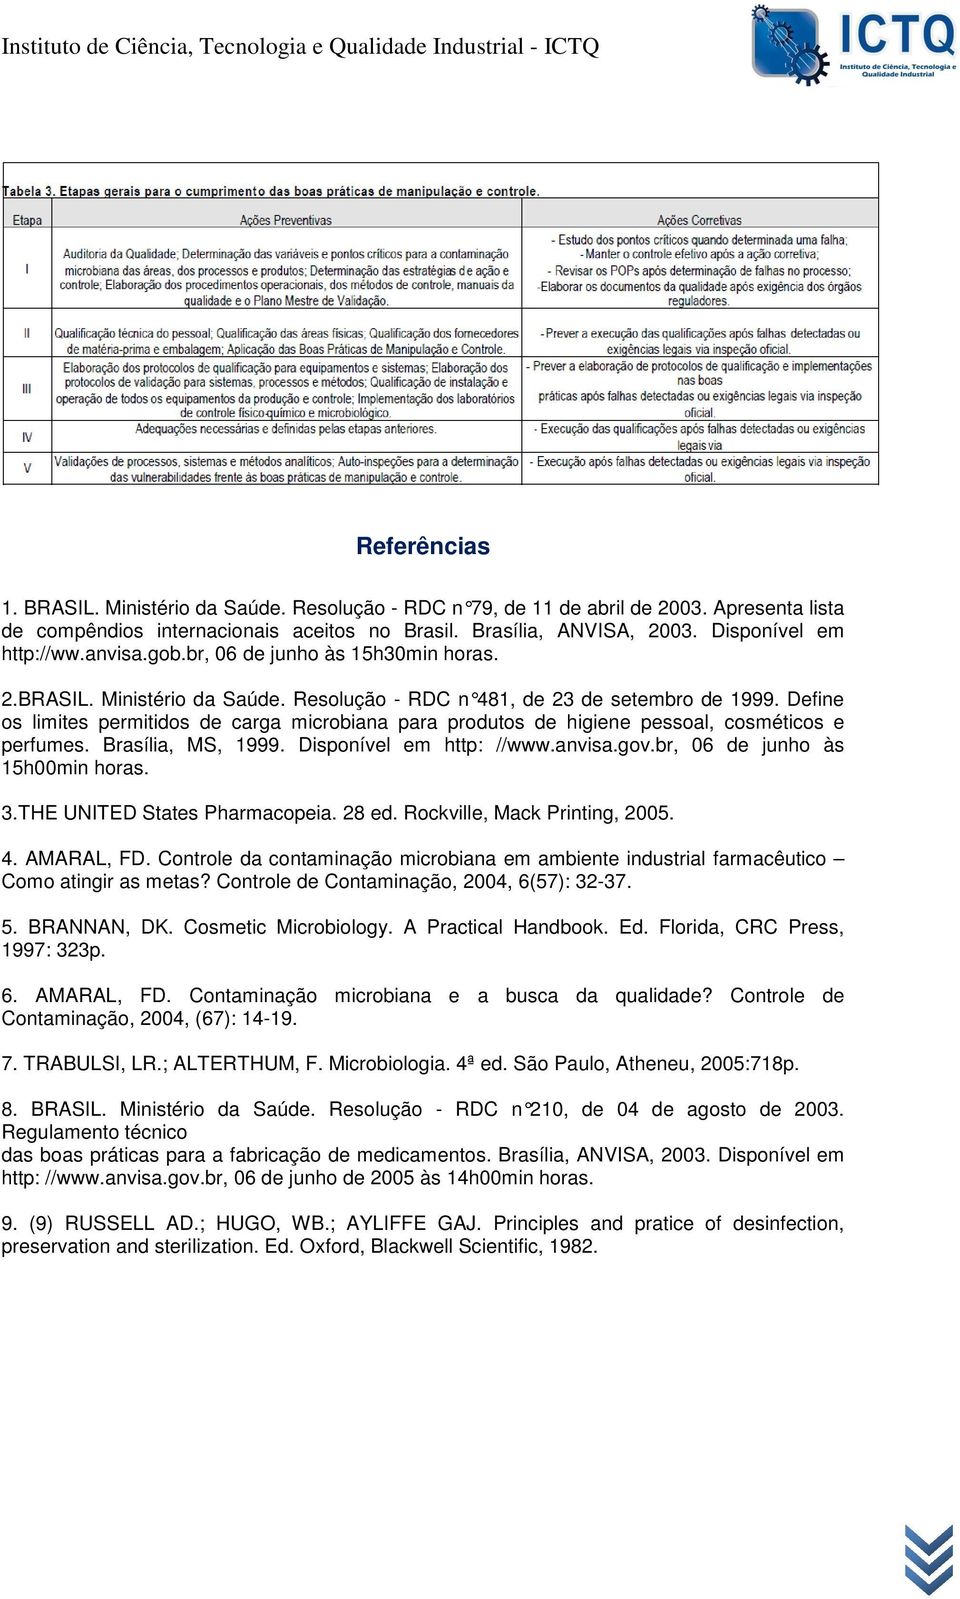 Define os limites permitidos de carga microbiana para produtos de higiene pessoal, cosméticos e perfumes. Brasília, MS, 1999. Disponível em http: //www.anvisa.gov.br, 06 de junho às 15h00min horas. 3.